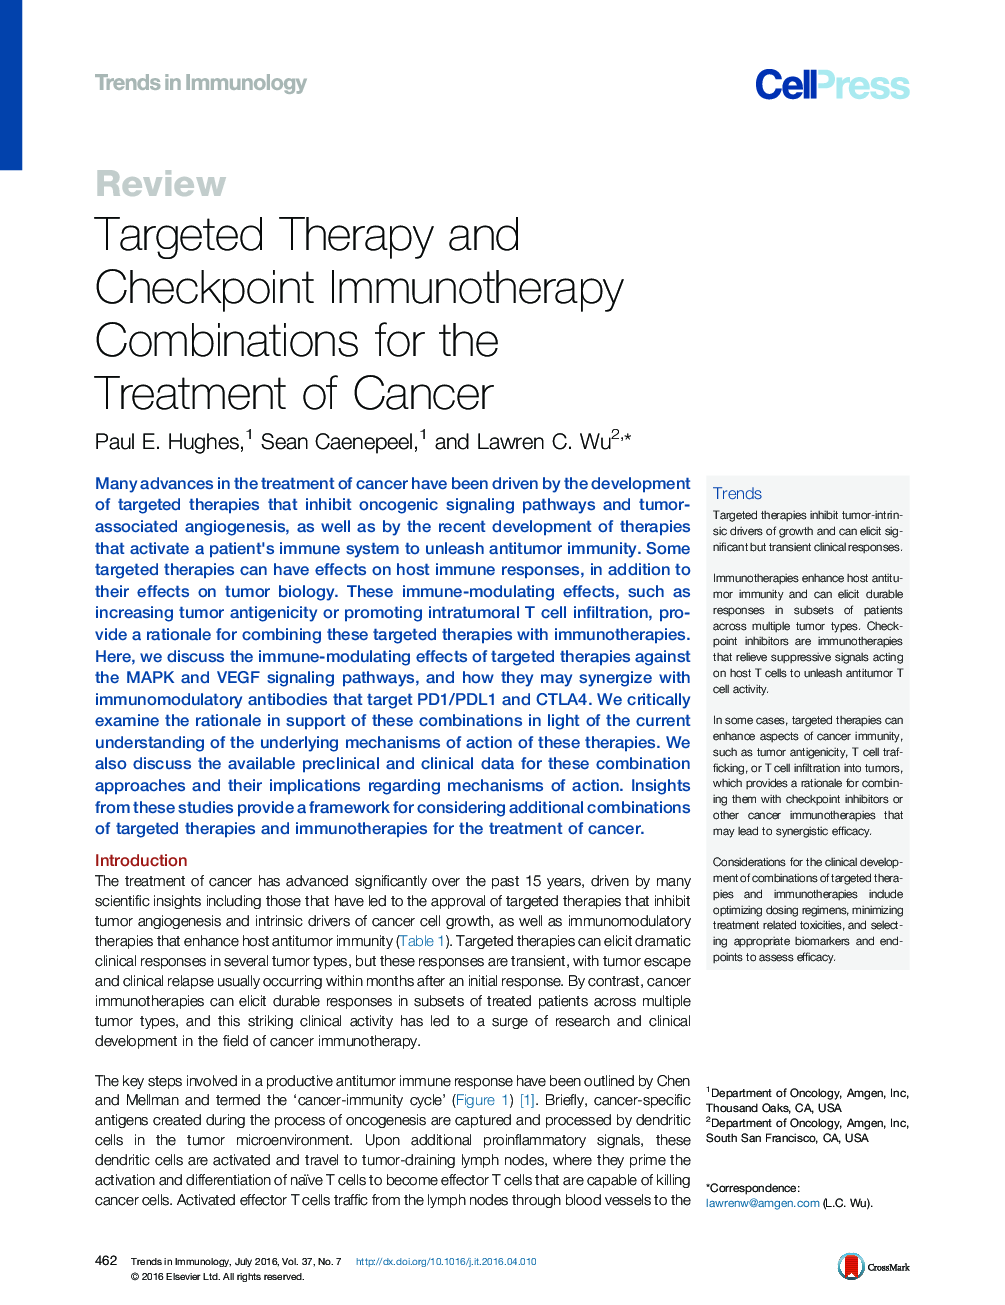 درمان های هدفمند و ترکیبی از ایمونوتراپی اکسپرس برای درمان سرطان 